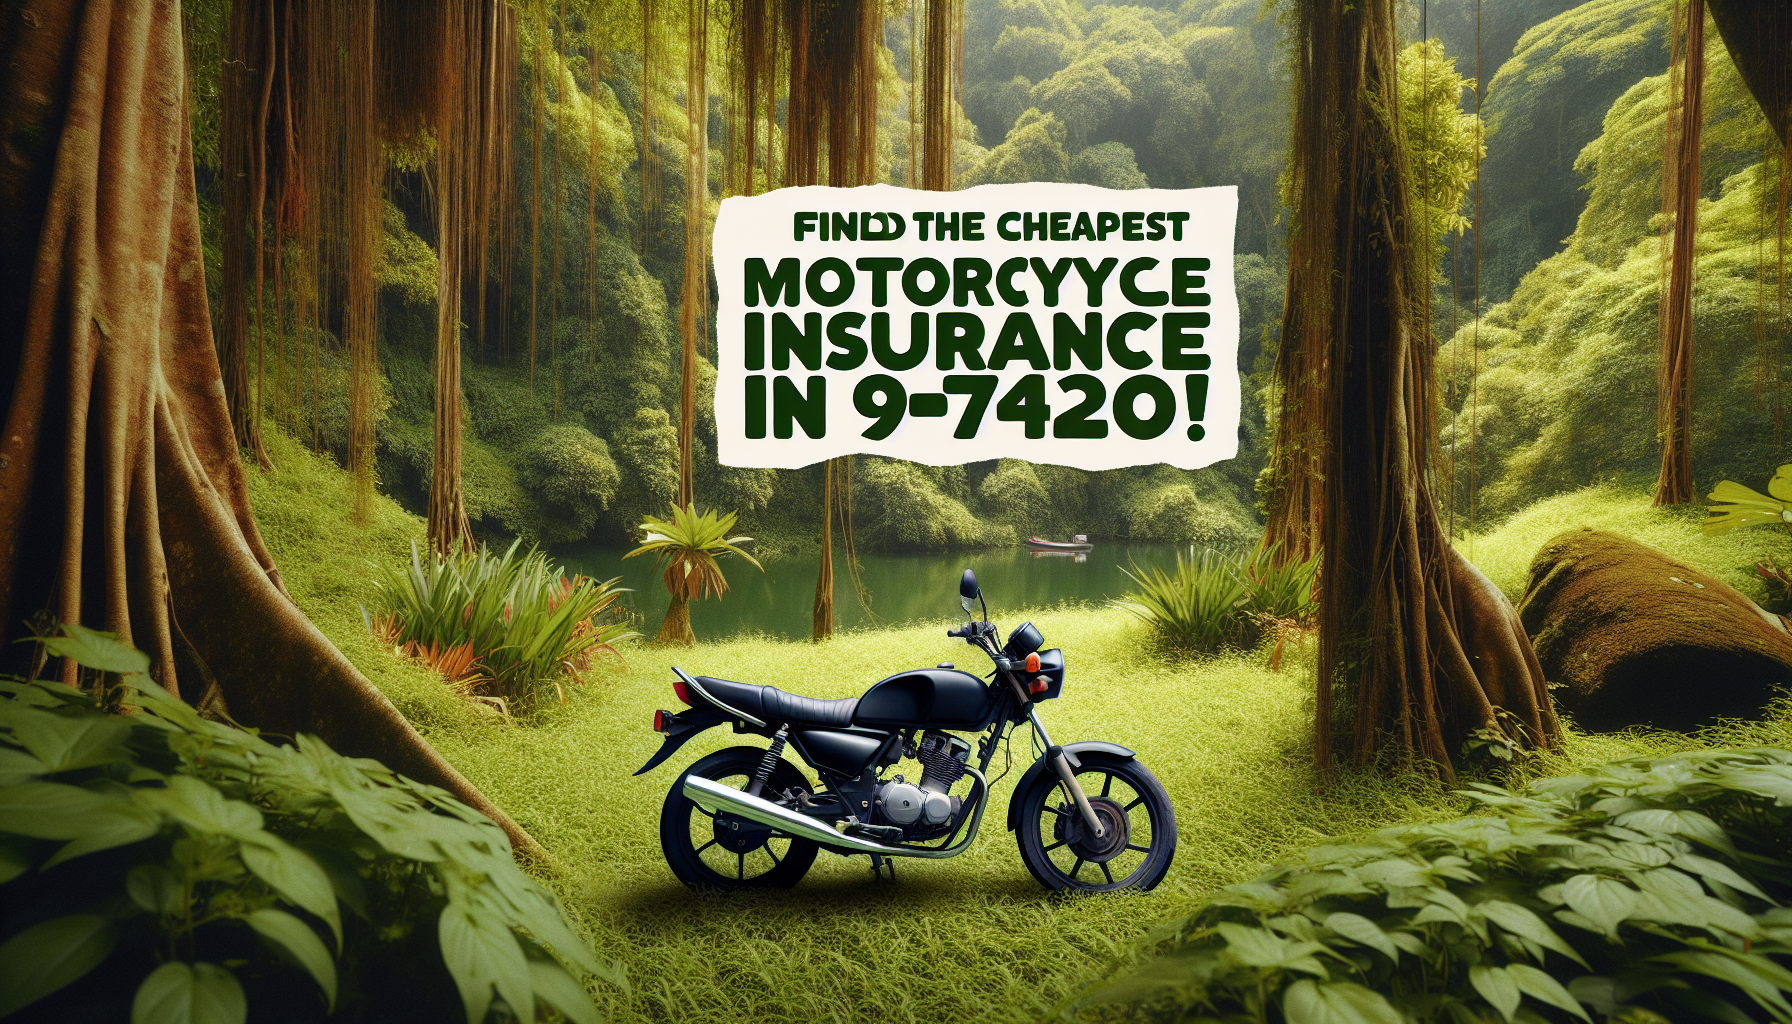 comparez les assurances moto 97420 pour trouver la meilleure offre au meilleur prix. trouvez facilement une assurance moto pas chère à 97420.